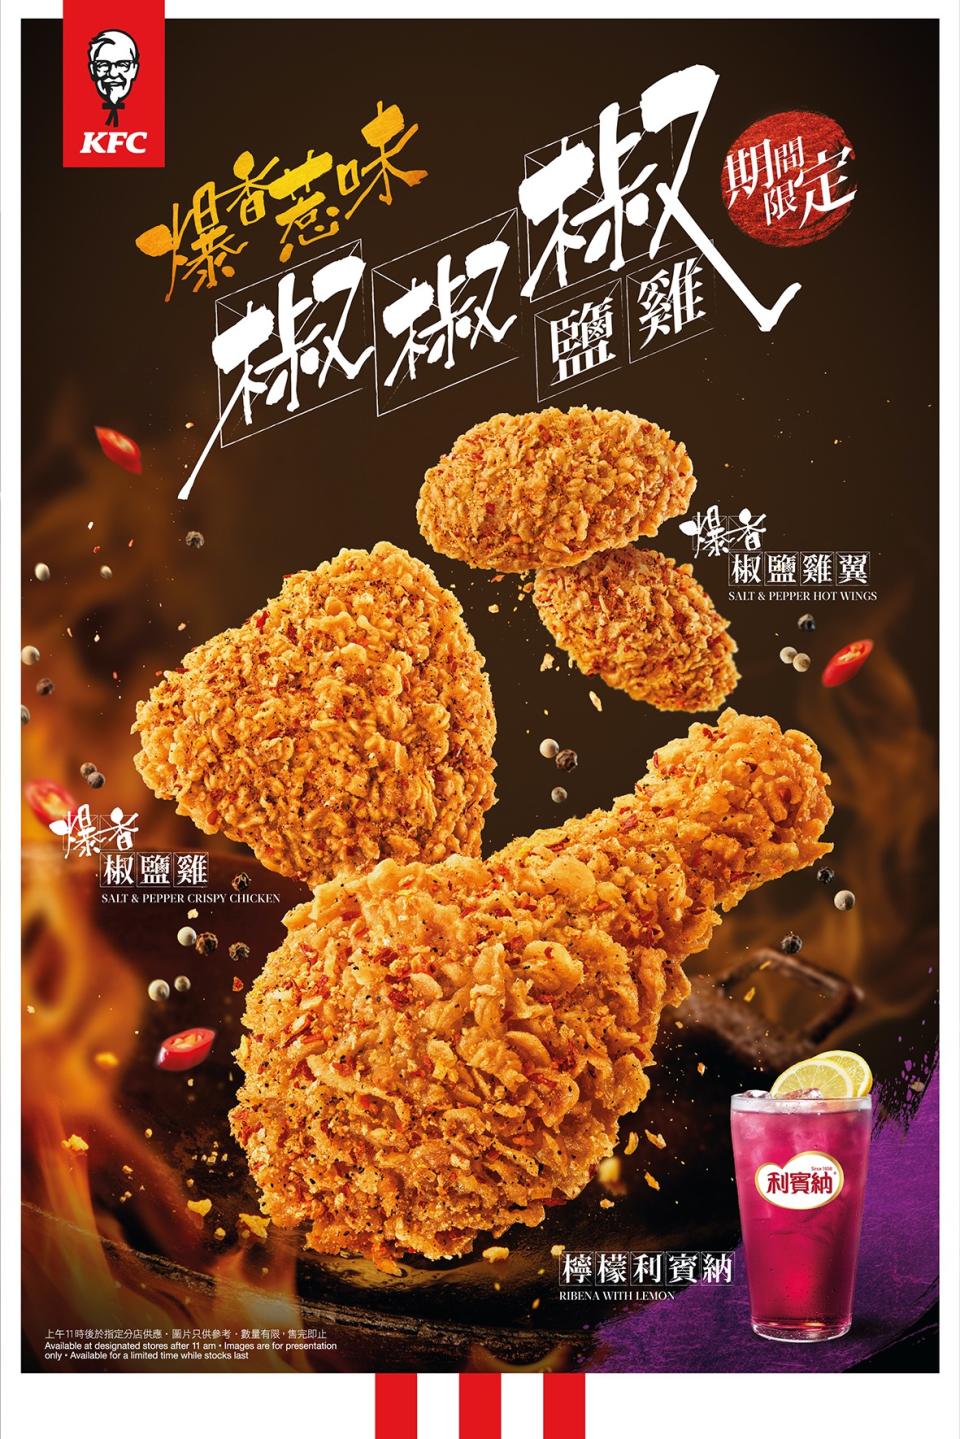 KFC 推期間限定「椒椒椒鹽雞」系列 3「椒」秘製港式風味椒鹽雞椒鹽雞翼配檸檬利賓納